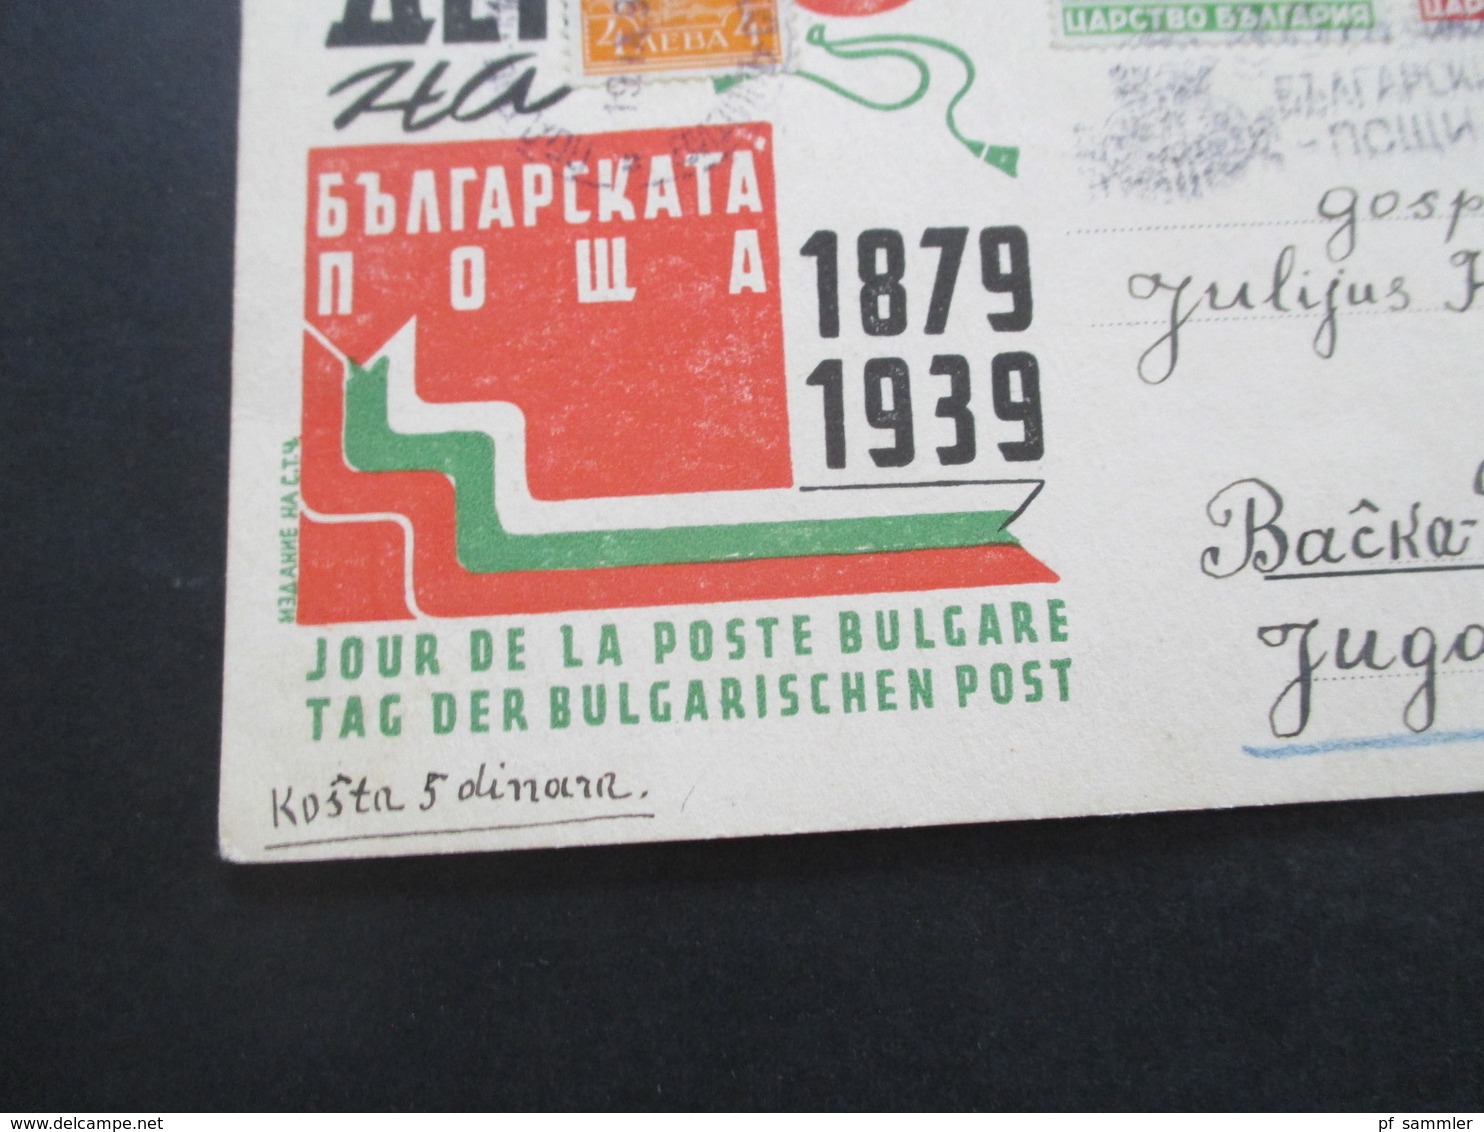 Bulgarien 1939 Sonderpsotkarte Tag Der Bulgarischen Post 1879 - 1939 Nach Backa Palanka Jugoslawien Gesendet - Lettres & Documents